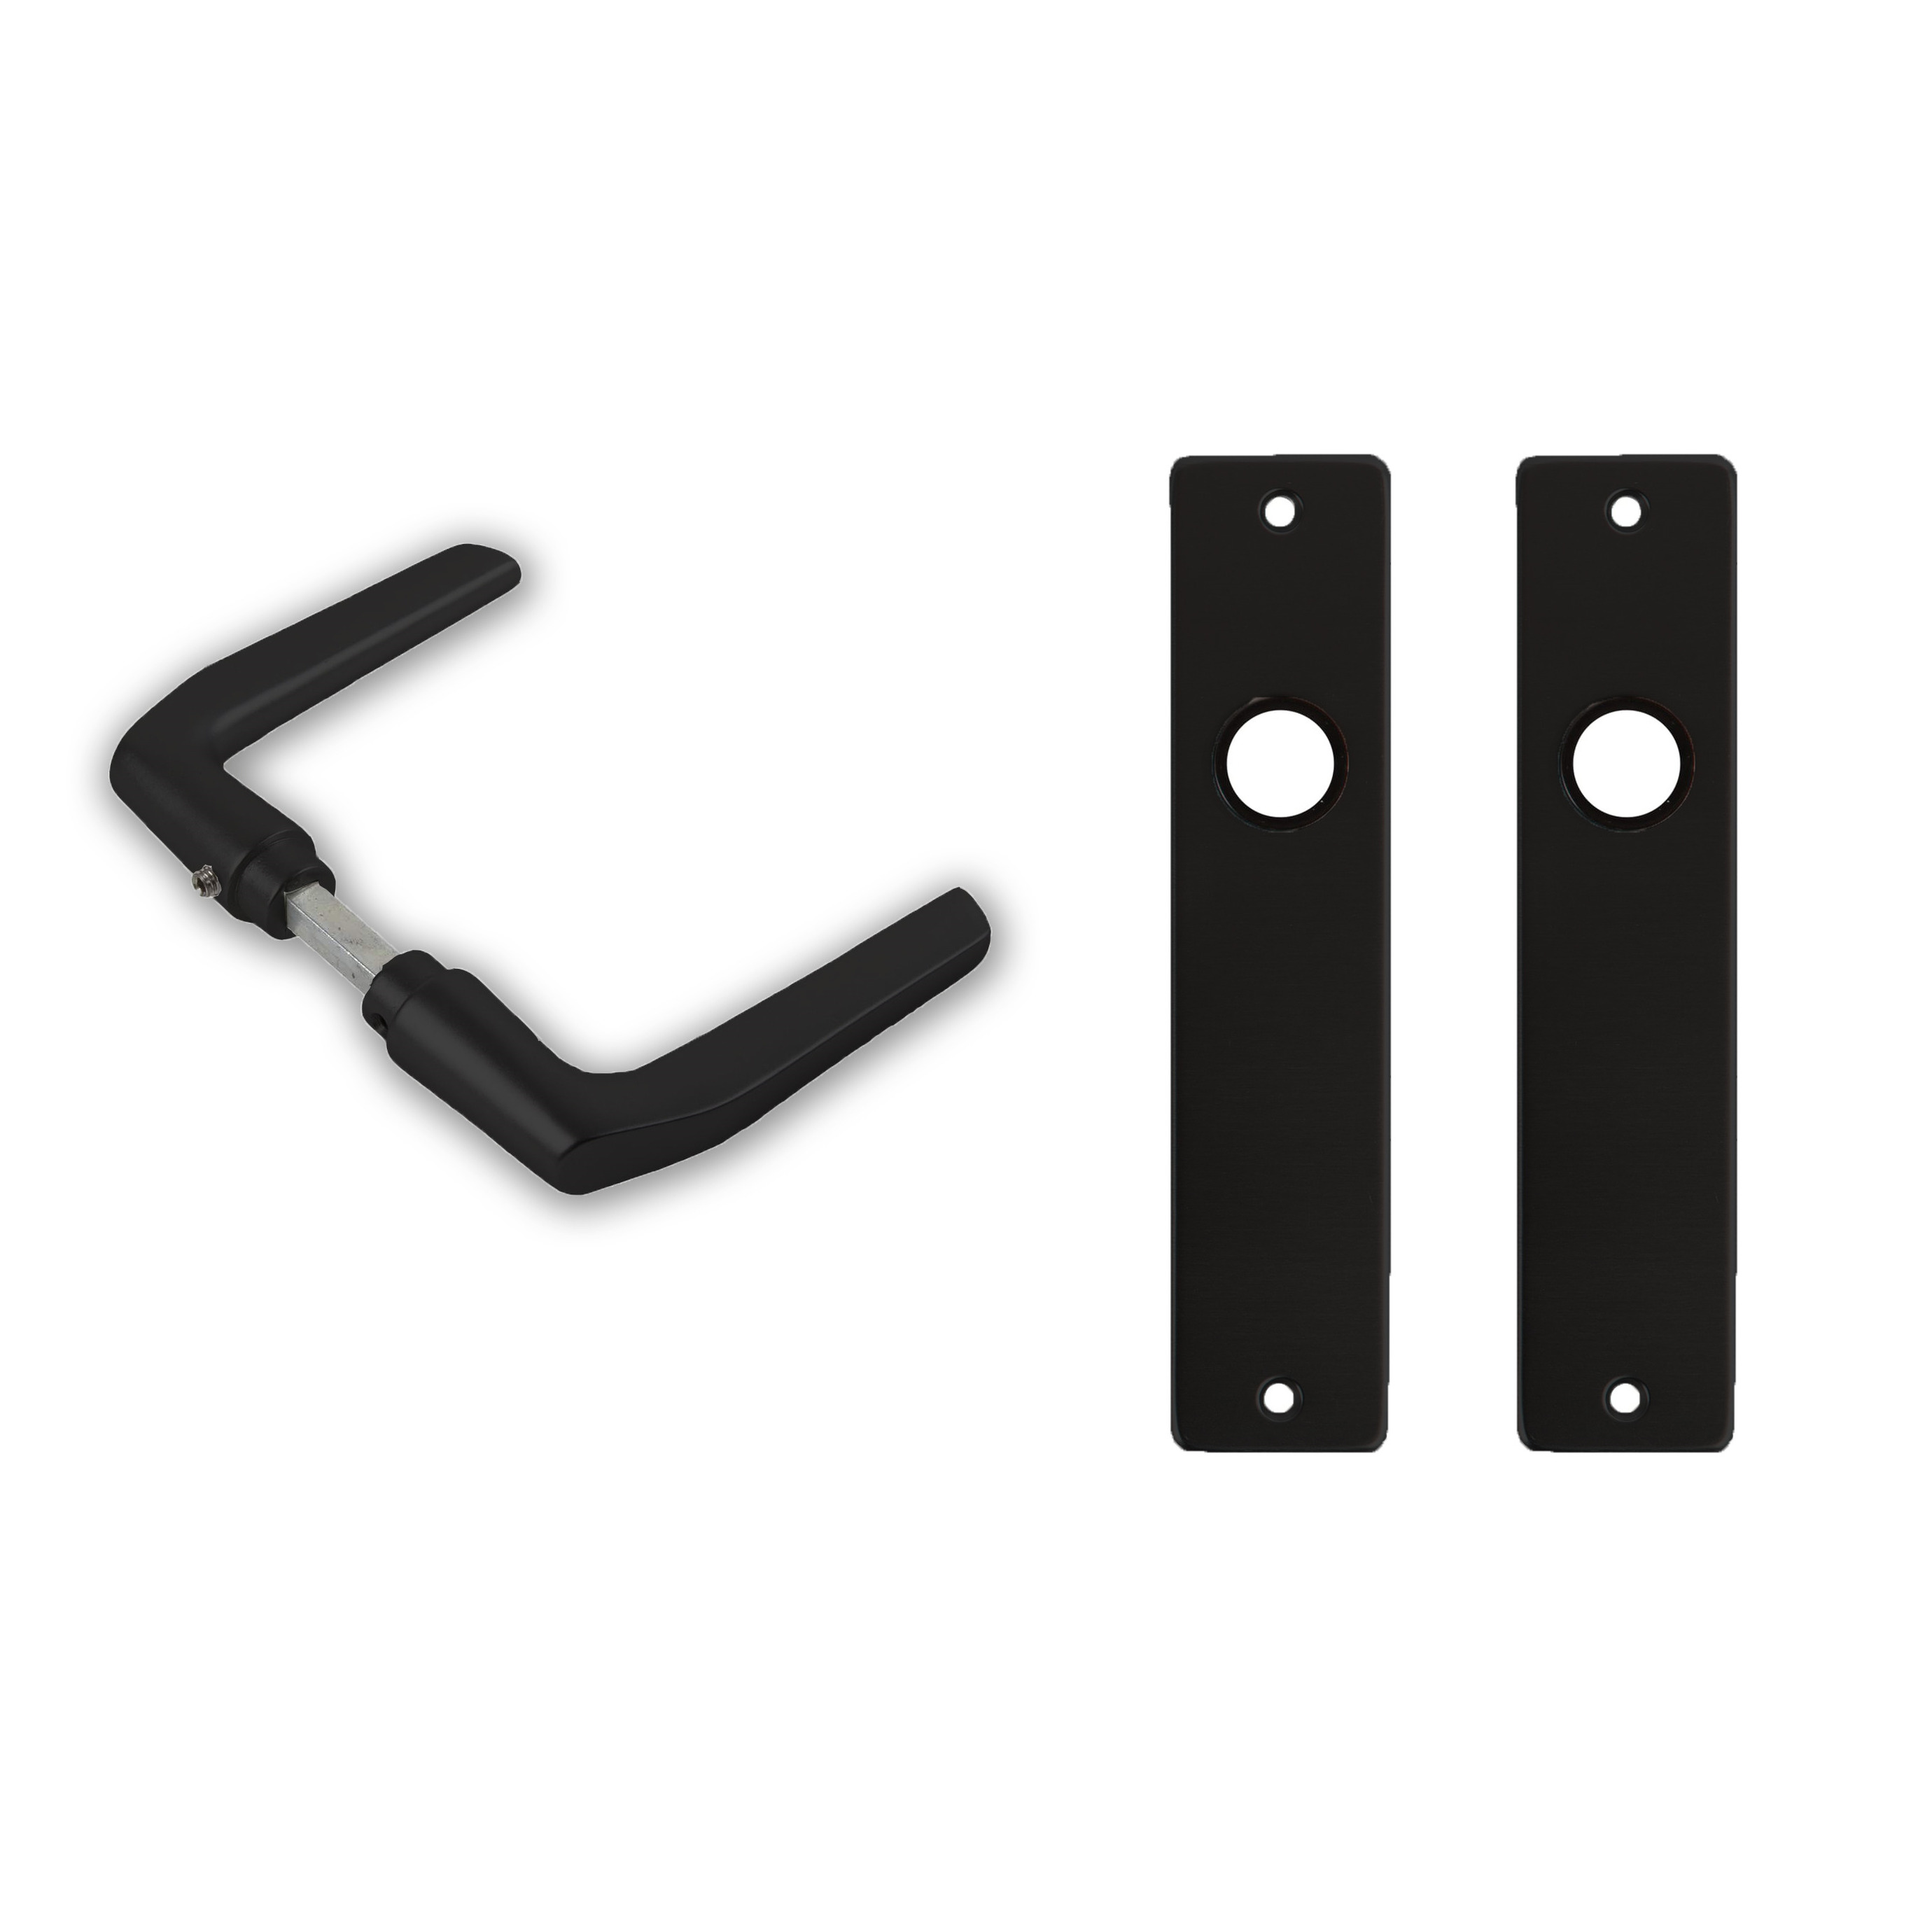 4x paar deurkrukset-deurgarnituur zwart met zwarte deurklinken en deurschilden